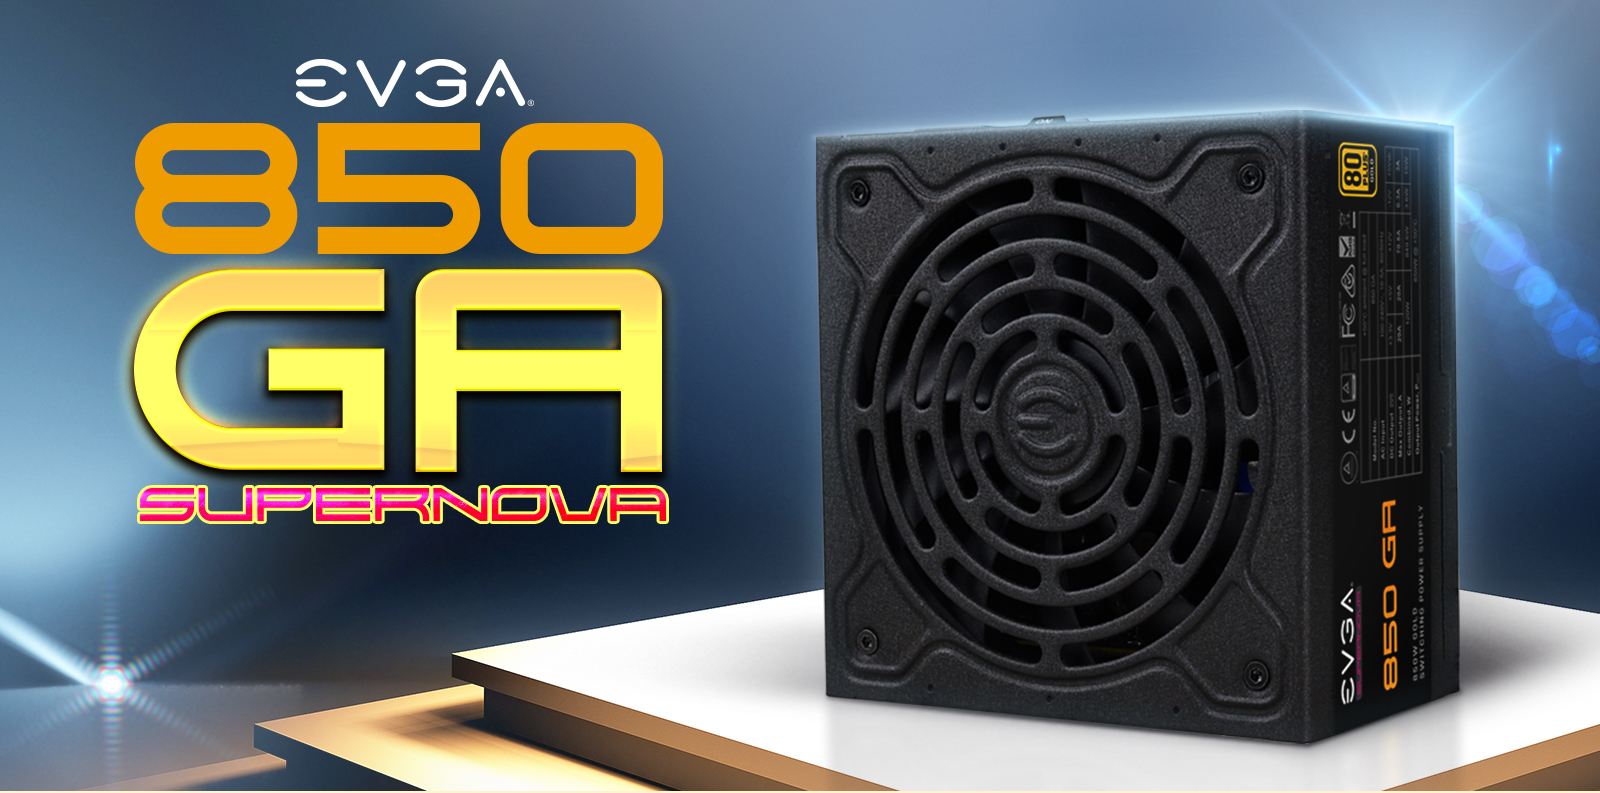 EVGA SuperNOVA 850 GA Fully Modular Power Supply facing forward and EVGA logo